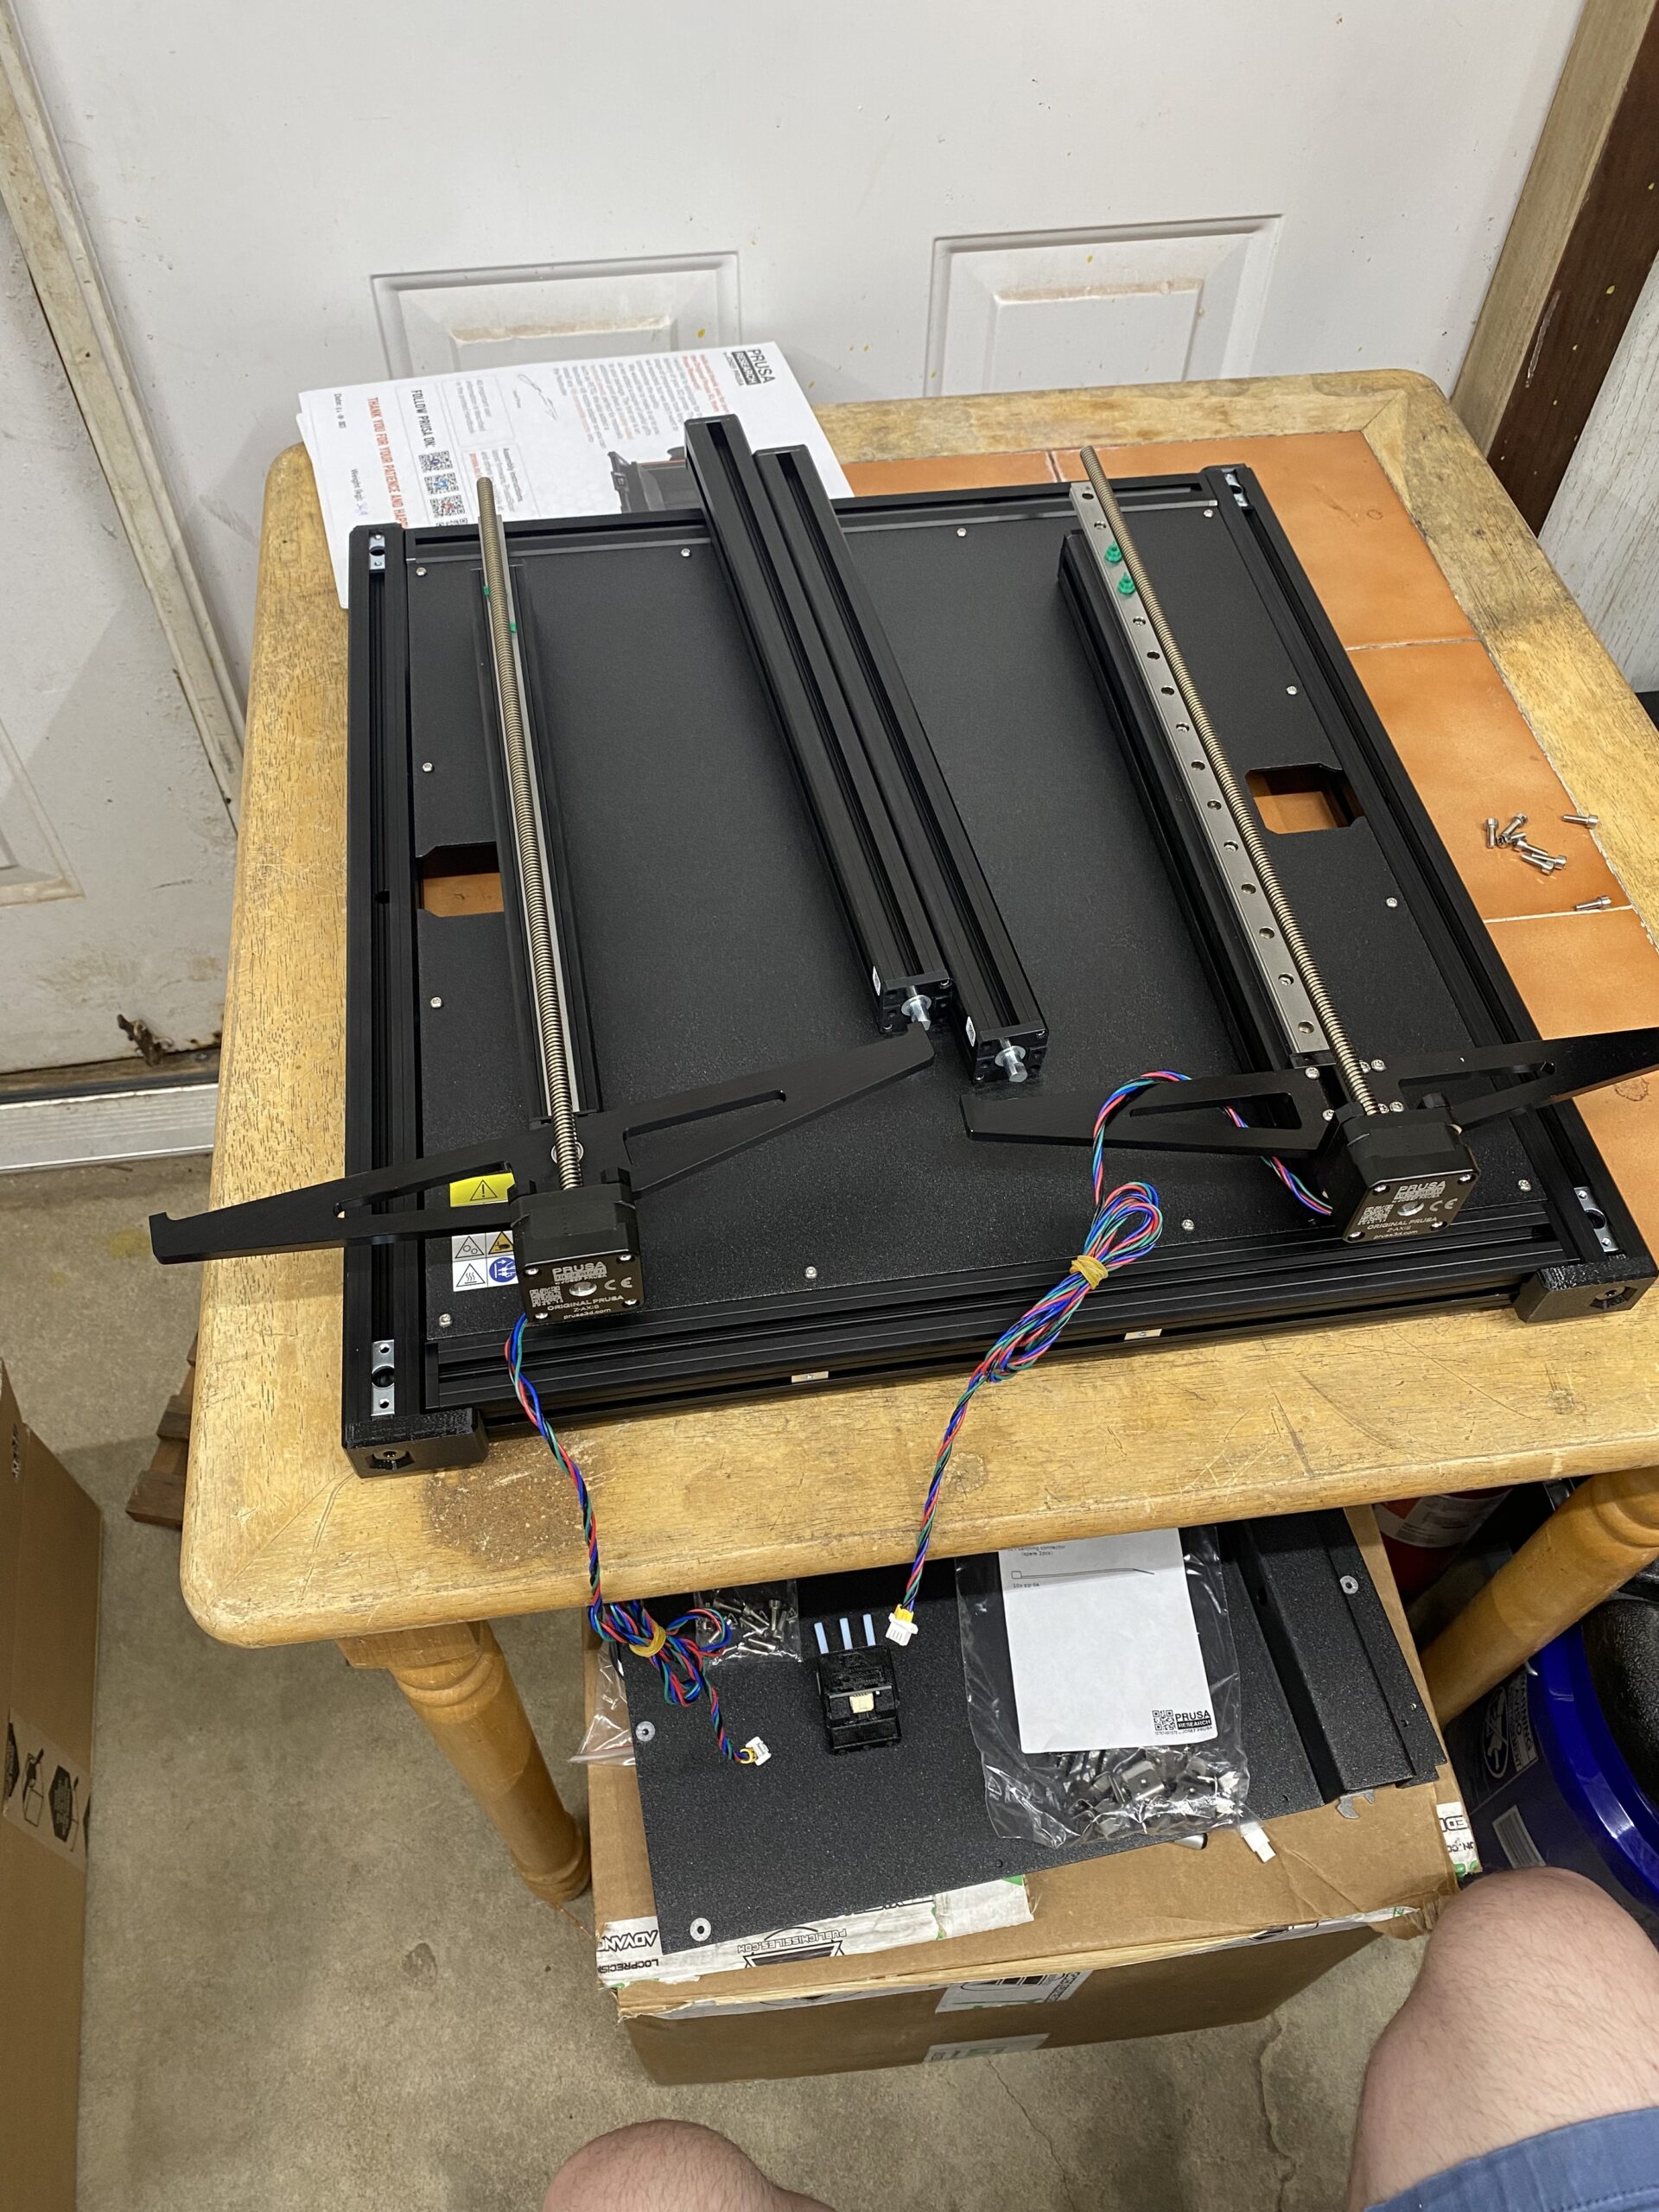 Original Prusa XL Semi-assembled 3D Printer